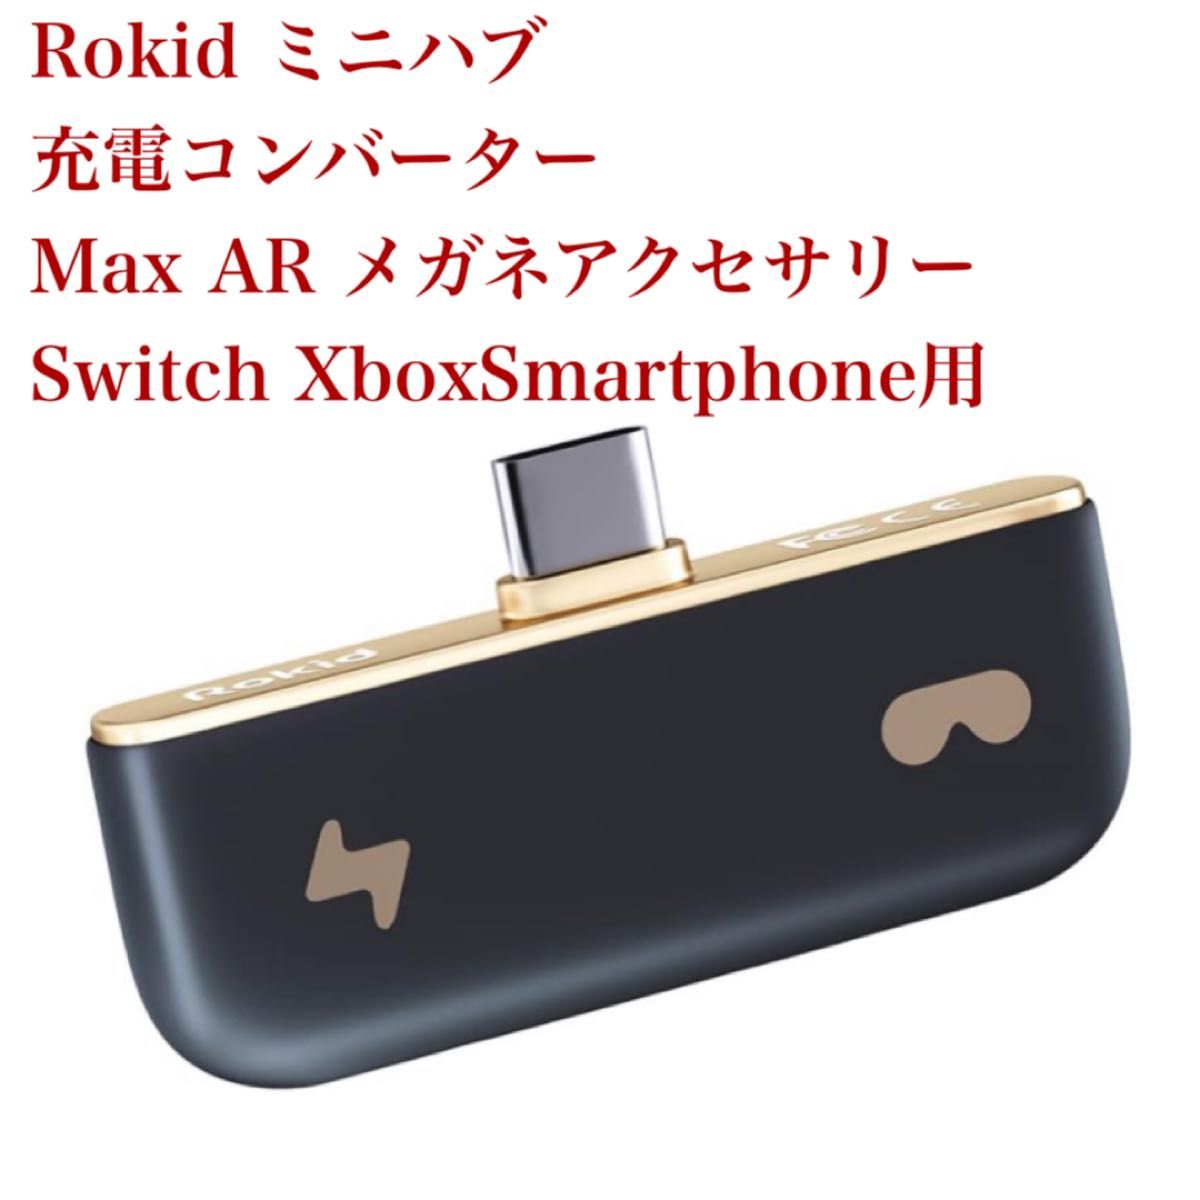 Rokid ミニハブ充電コンバーター Max AR メガネアクセサリー Switch XboxSmartphone用